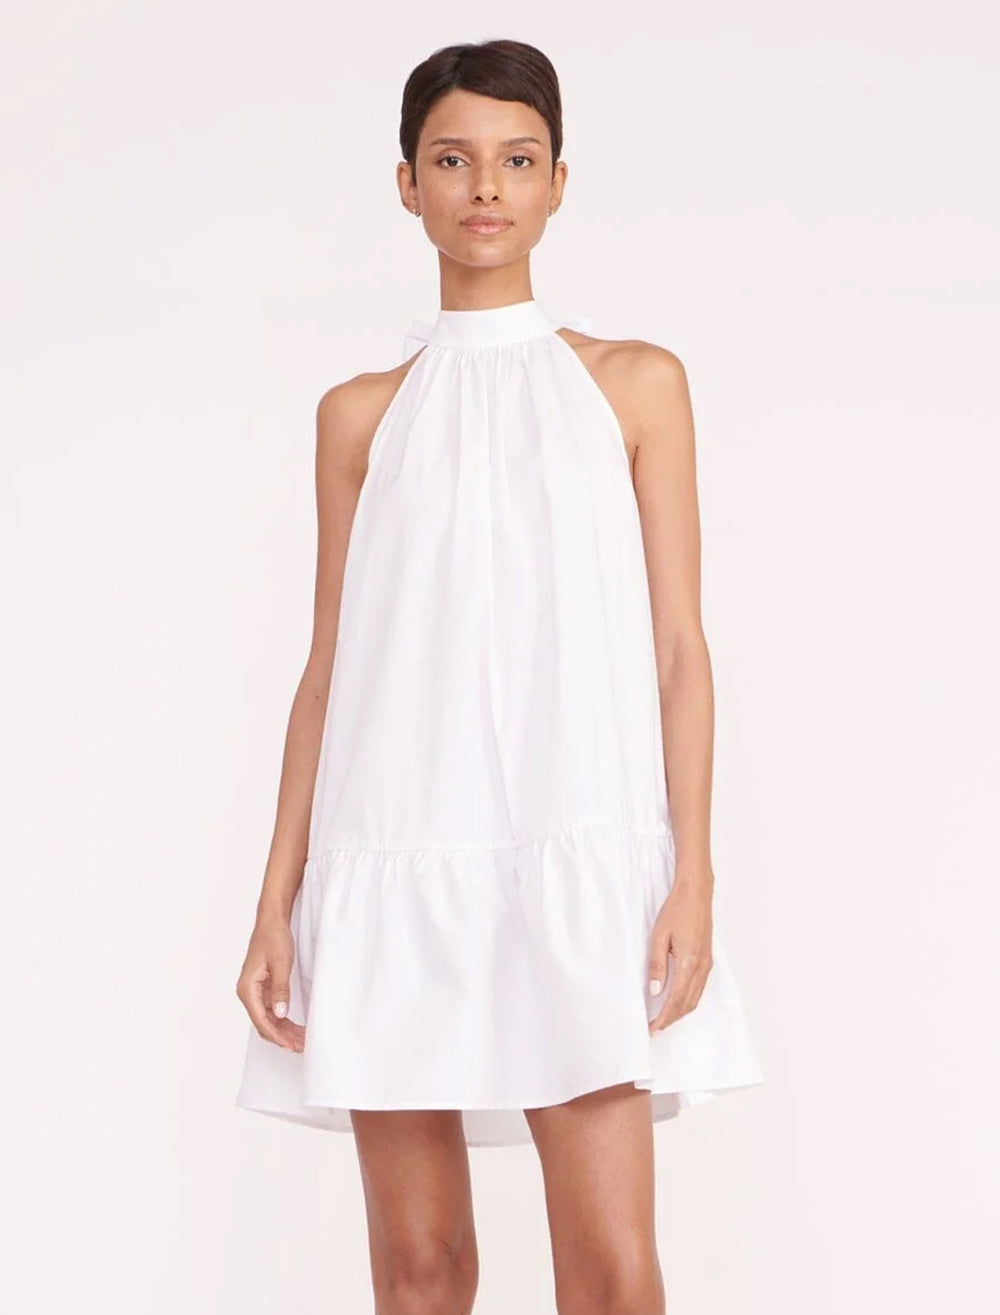 Model wearing STAUD's marlowe dress in white.